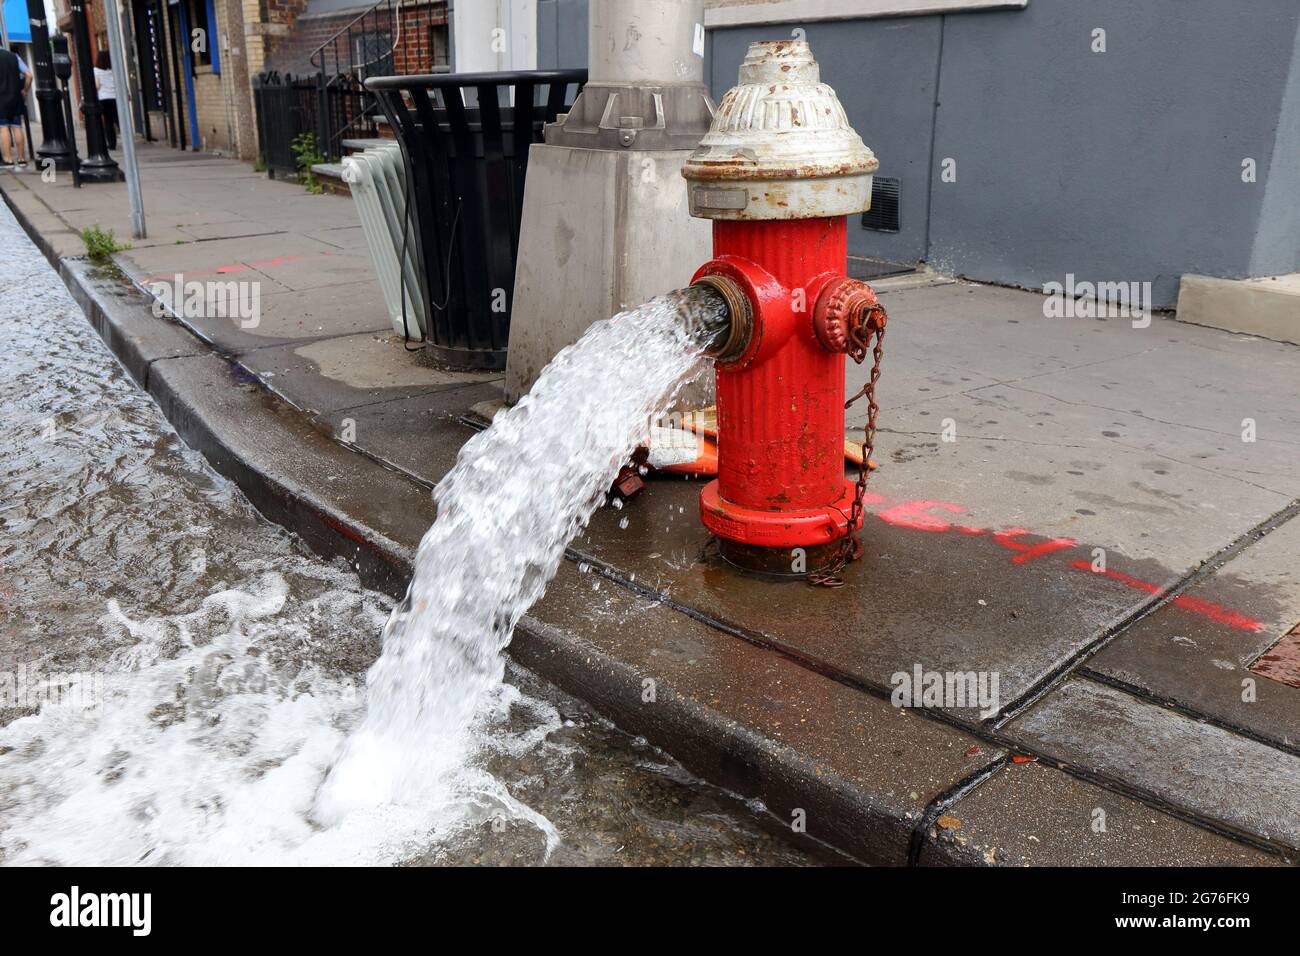 Un idrante a fuoco aperto che sgorga acqua nella strada. Foto Stock